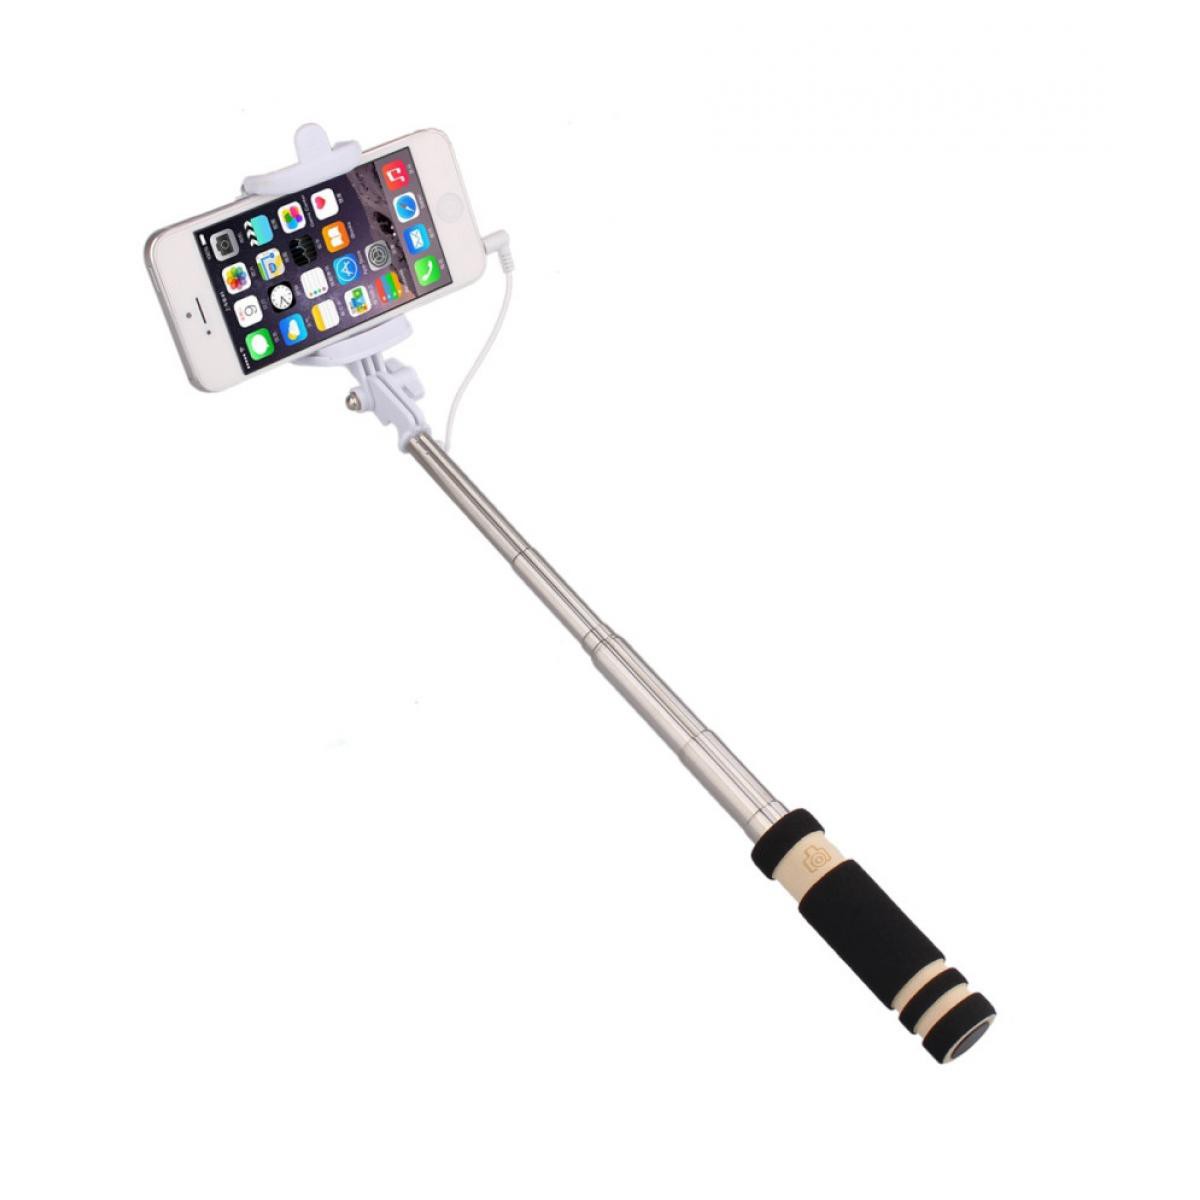 Shot - Mini Perche Selfie pour "WIKO View 5" Smartphone avec Cable Jack Selfie Stick Android IOS Reglable Bouton Photo (NOIR) - Autres accessoires smartphone